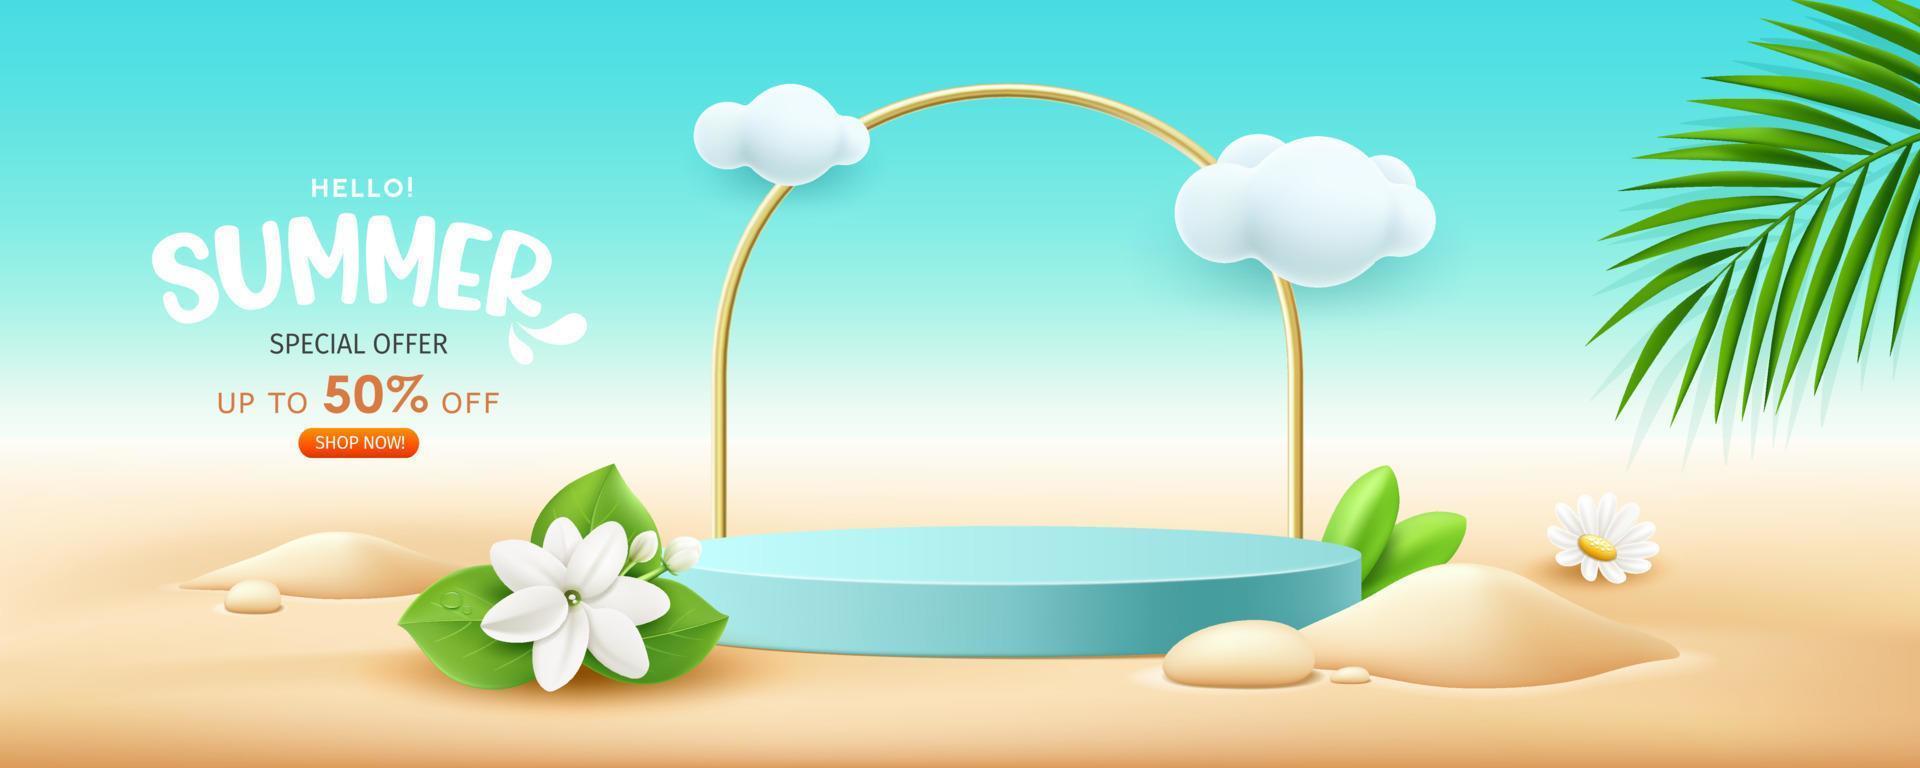 Sommer- Anzeige Podium Blau Farbe Verkauf, Blumen und Kokosnuss Blätter Stapel von Sand Banner Design, auf Wolke und Sand Strand Hintergrund, eps 10 Vektor Illustration